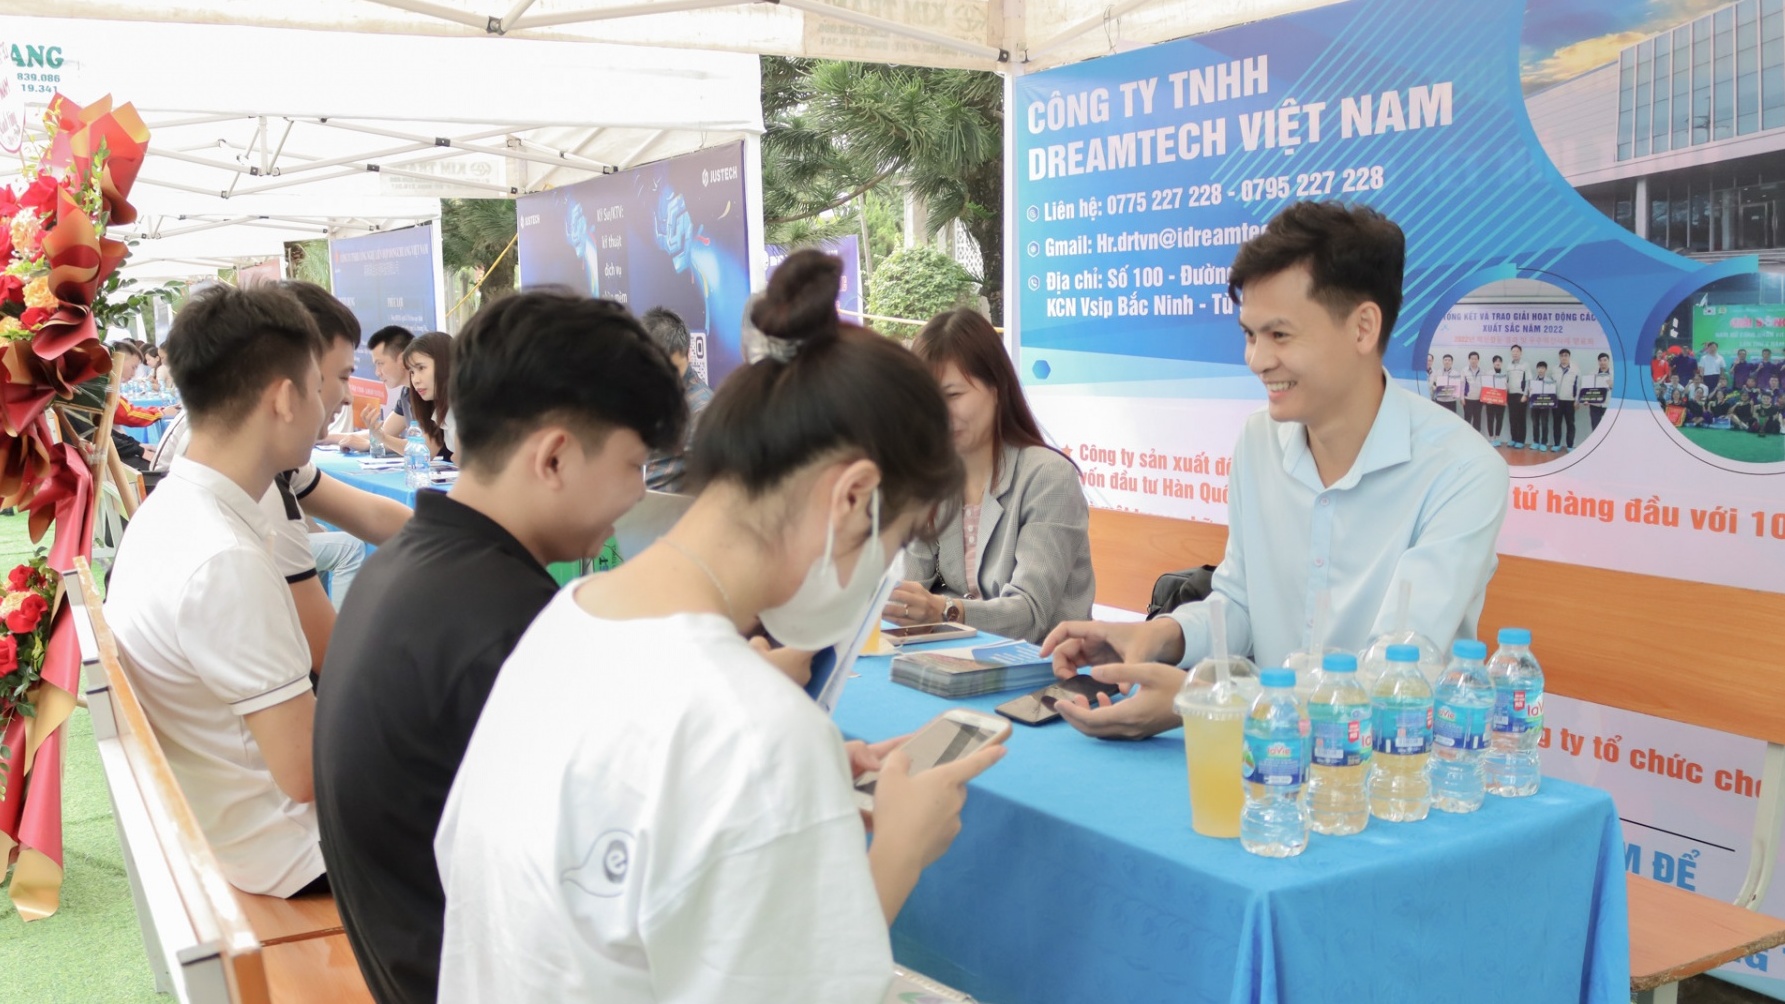 Công ty TNHH Dreamtech Việt Nam tuyển 2.000 công nhân đi làm ngay